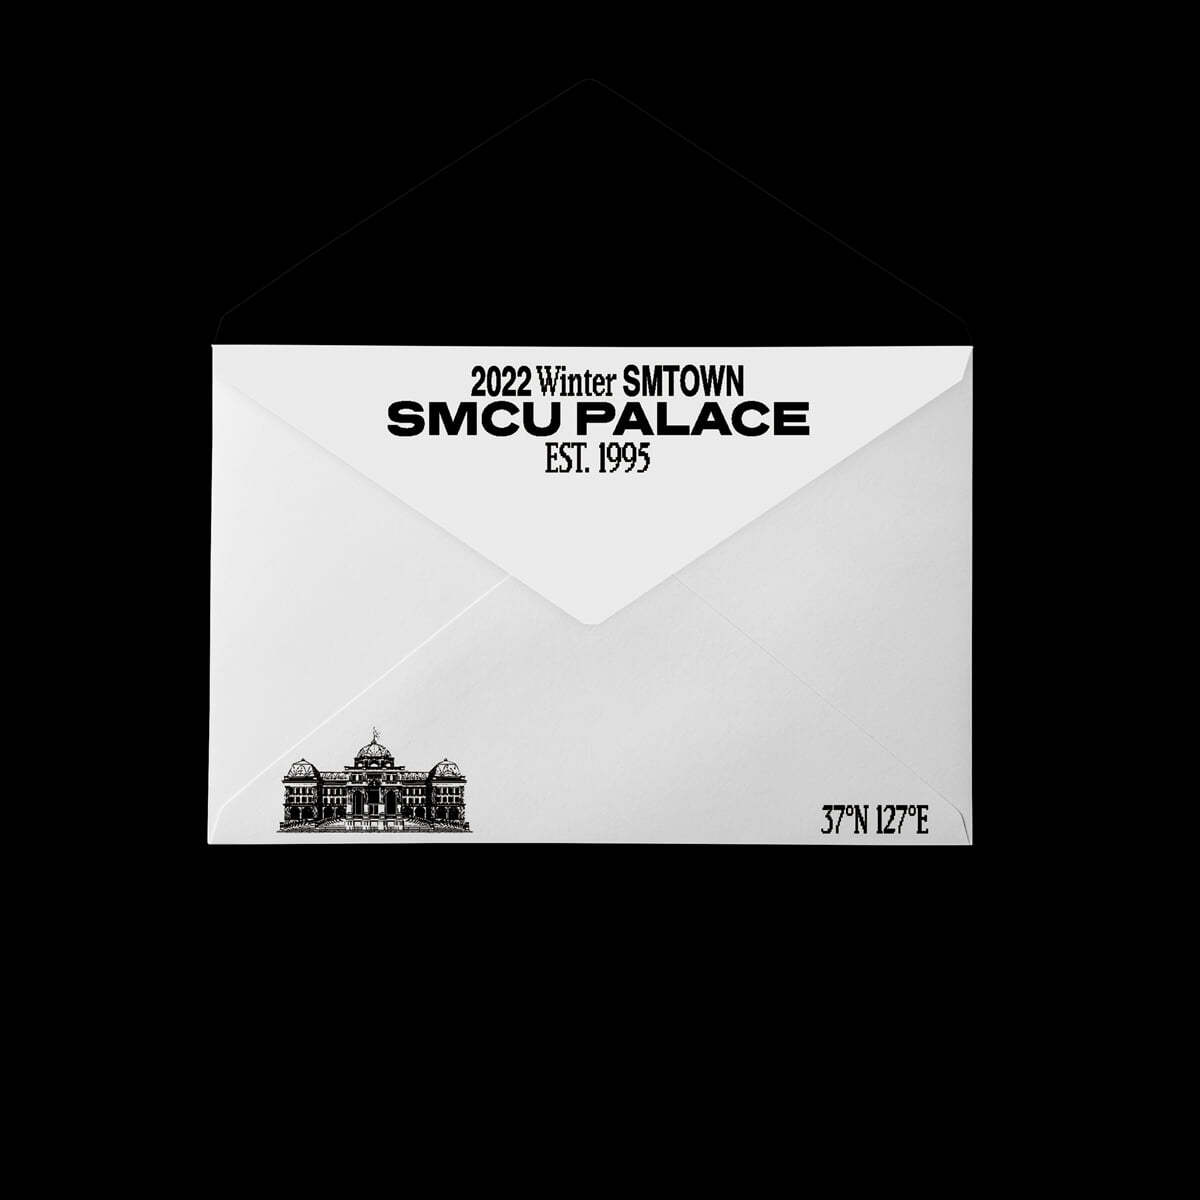 디제이 긴조, 레이든, 임레이, 마비스타 (DJ) - 2022 Winter SMTOWN : SMCU PALACE (GUEST. DJ (GINJO, RAIDEN, IMLAY, MAR VISTA) [Membership Card Ver.](스마트앨범)